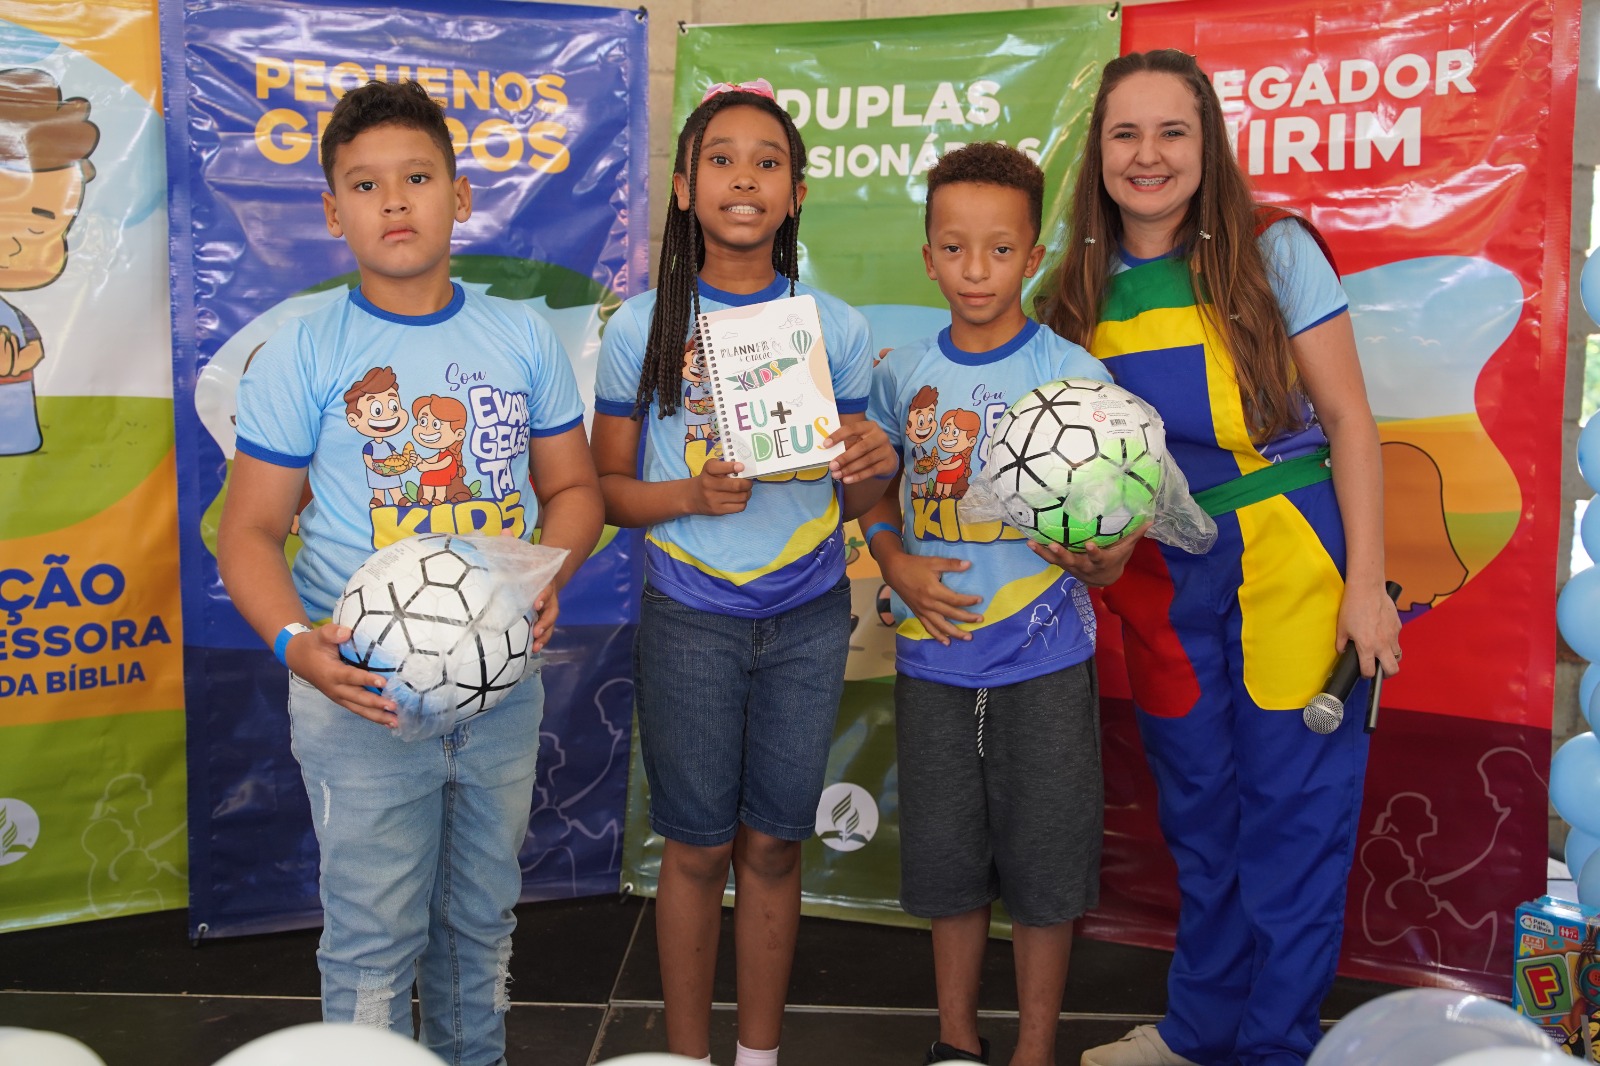 <strong>Pequenos missionários: crianças são motivadas a atuarem como evangelistas em Minas Gerais</strong>